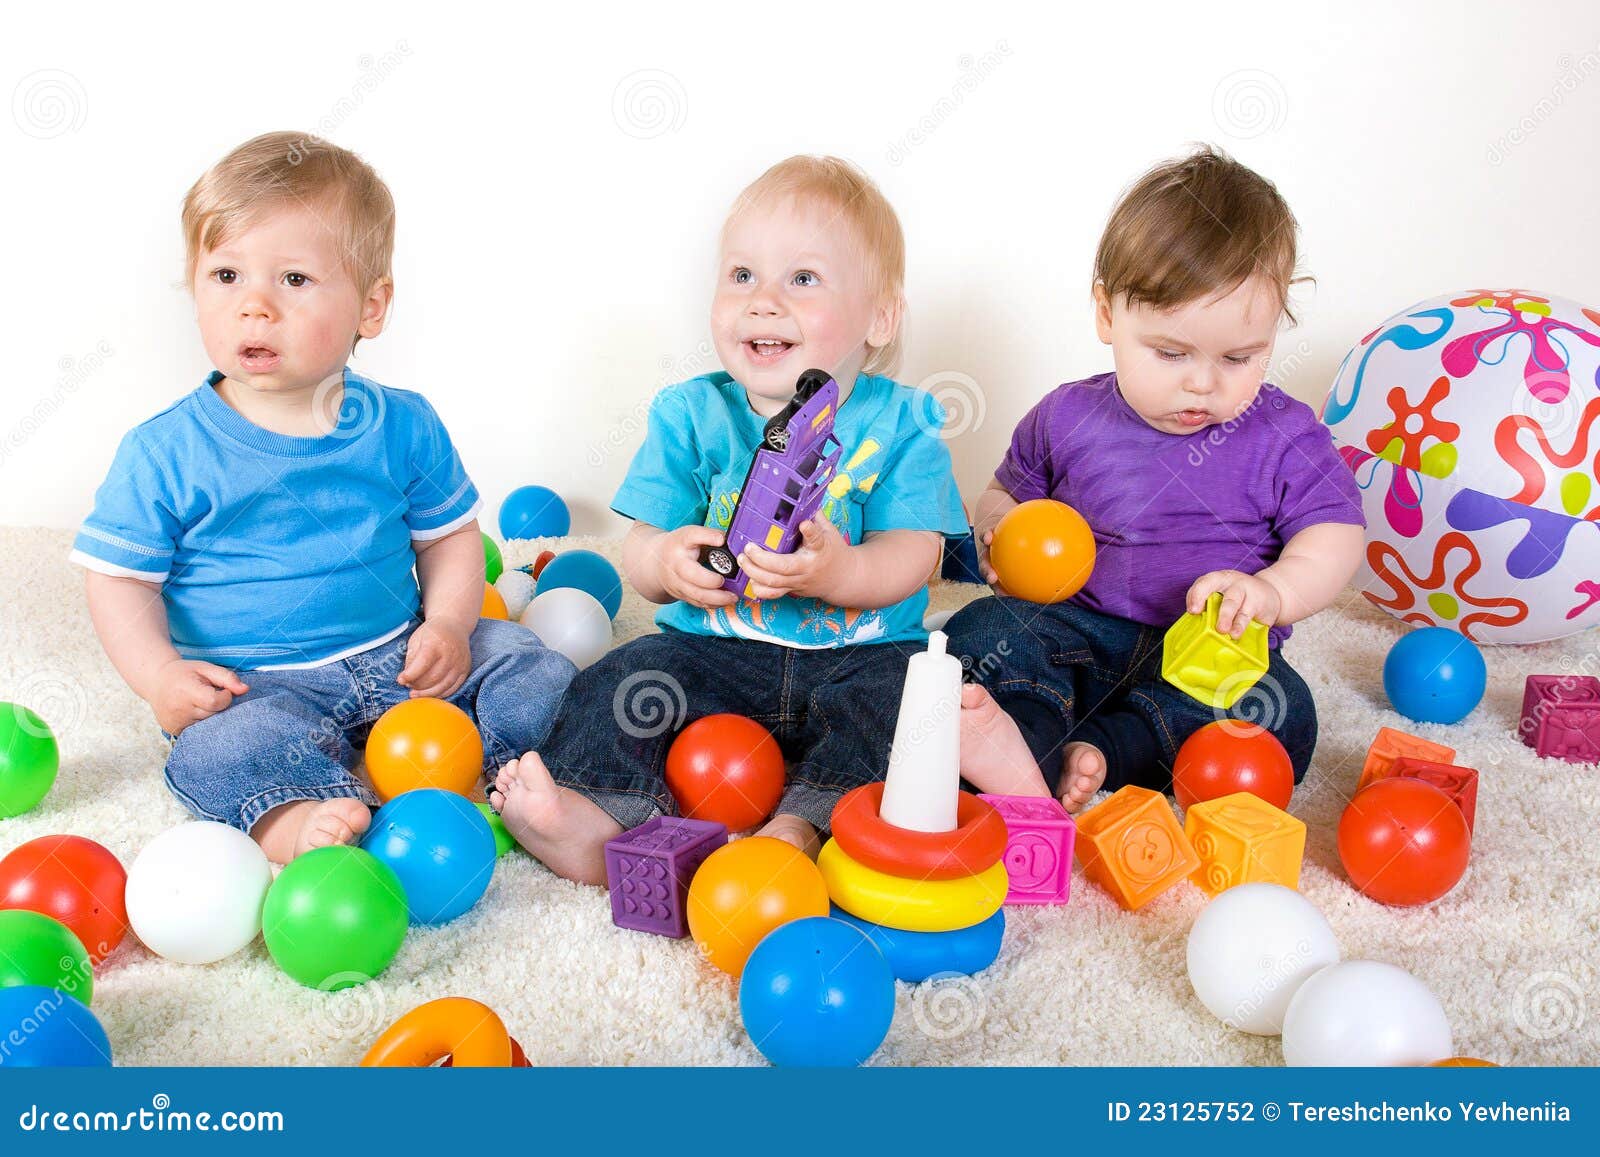 ziekte Vriendelijkheid argument De Babys Spelen Met Speelgoed Stock Foto - Image of jongens, geluk: 23125752